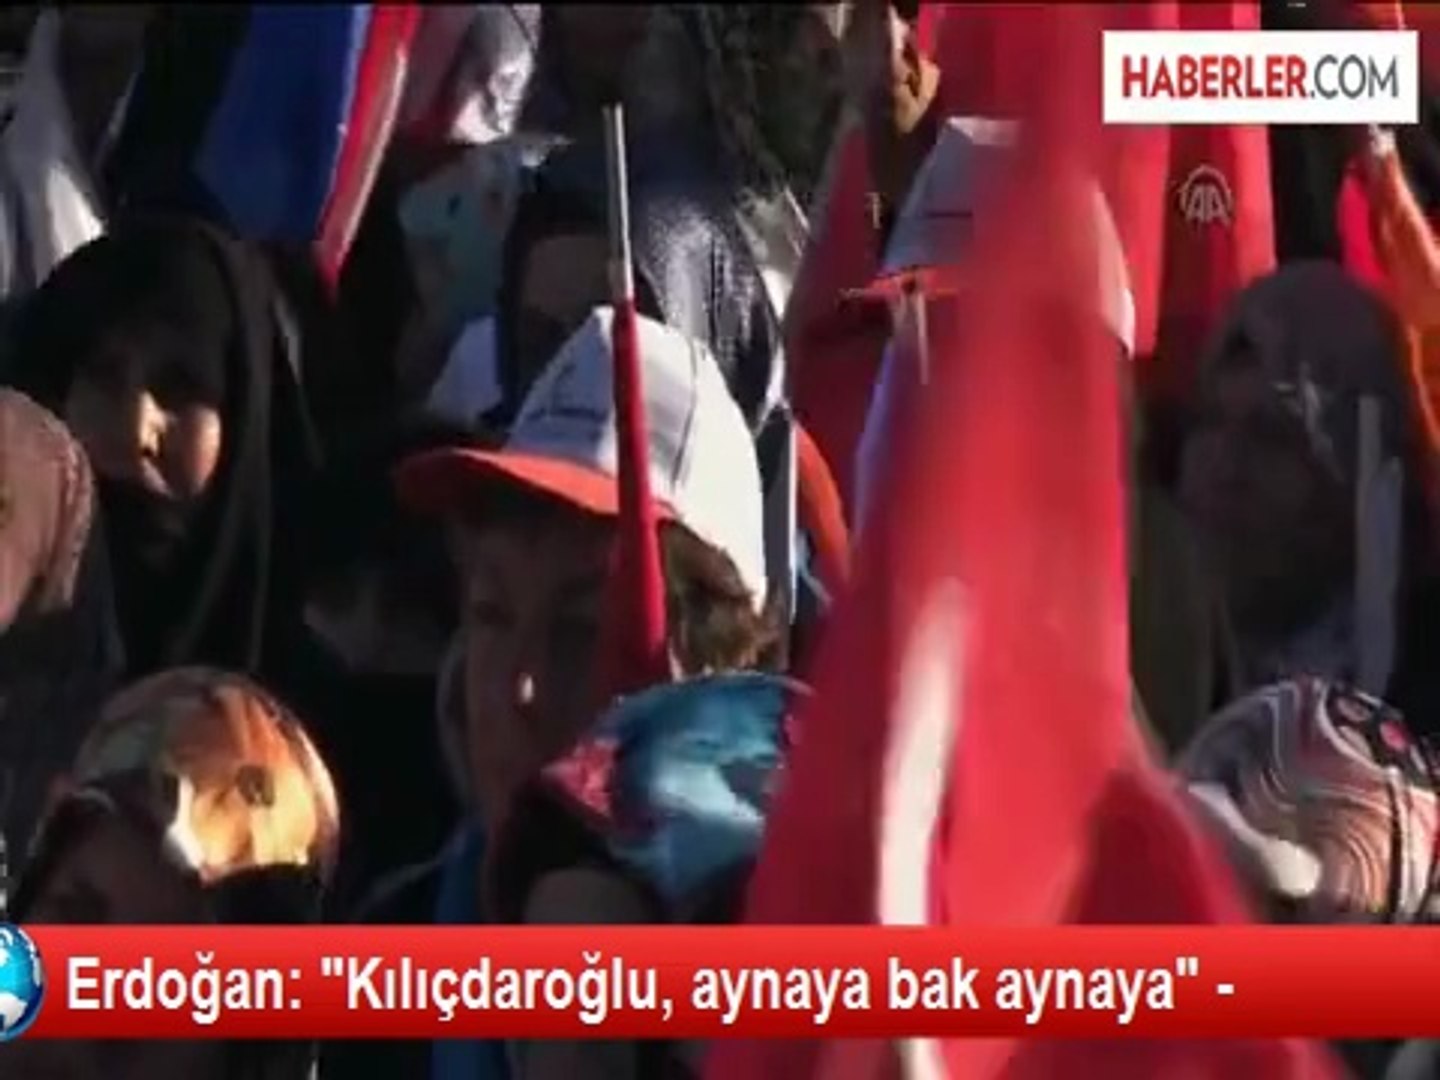 Erdoğan: "Kılıçdaroğlu, aynaya bak aynaya" - - Dailymotion Video